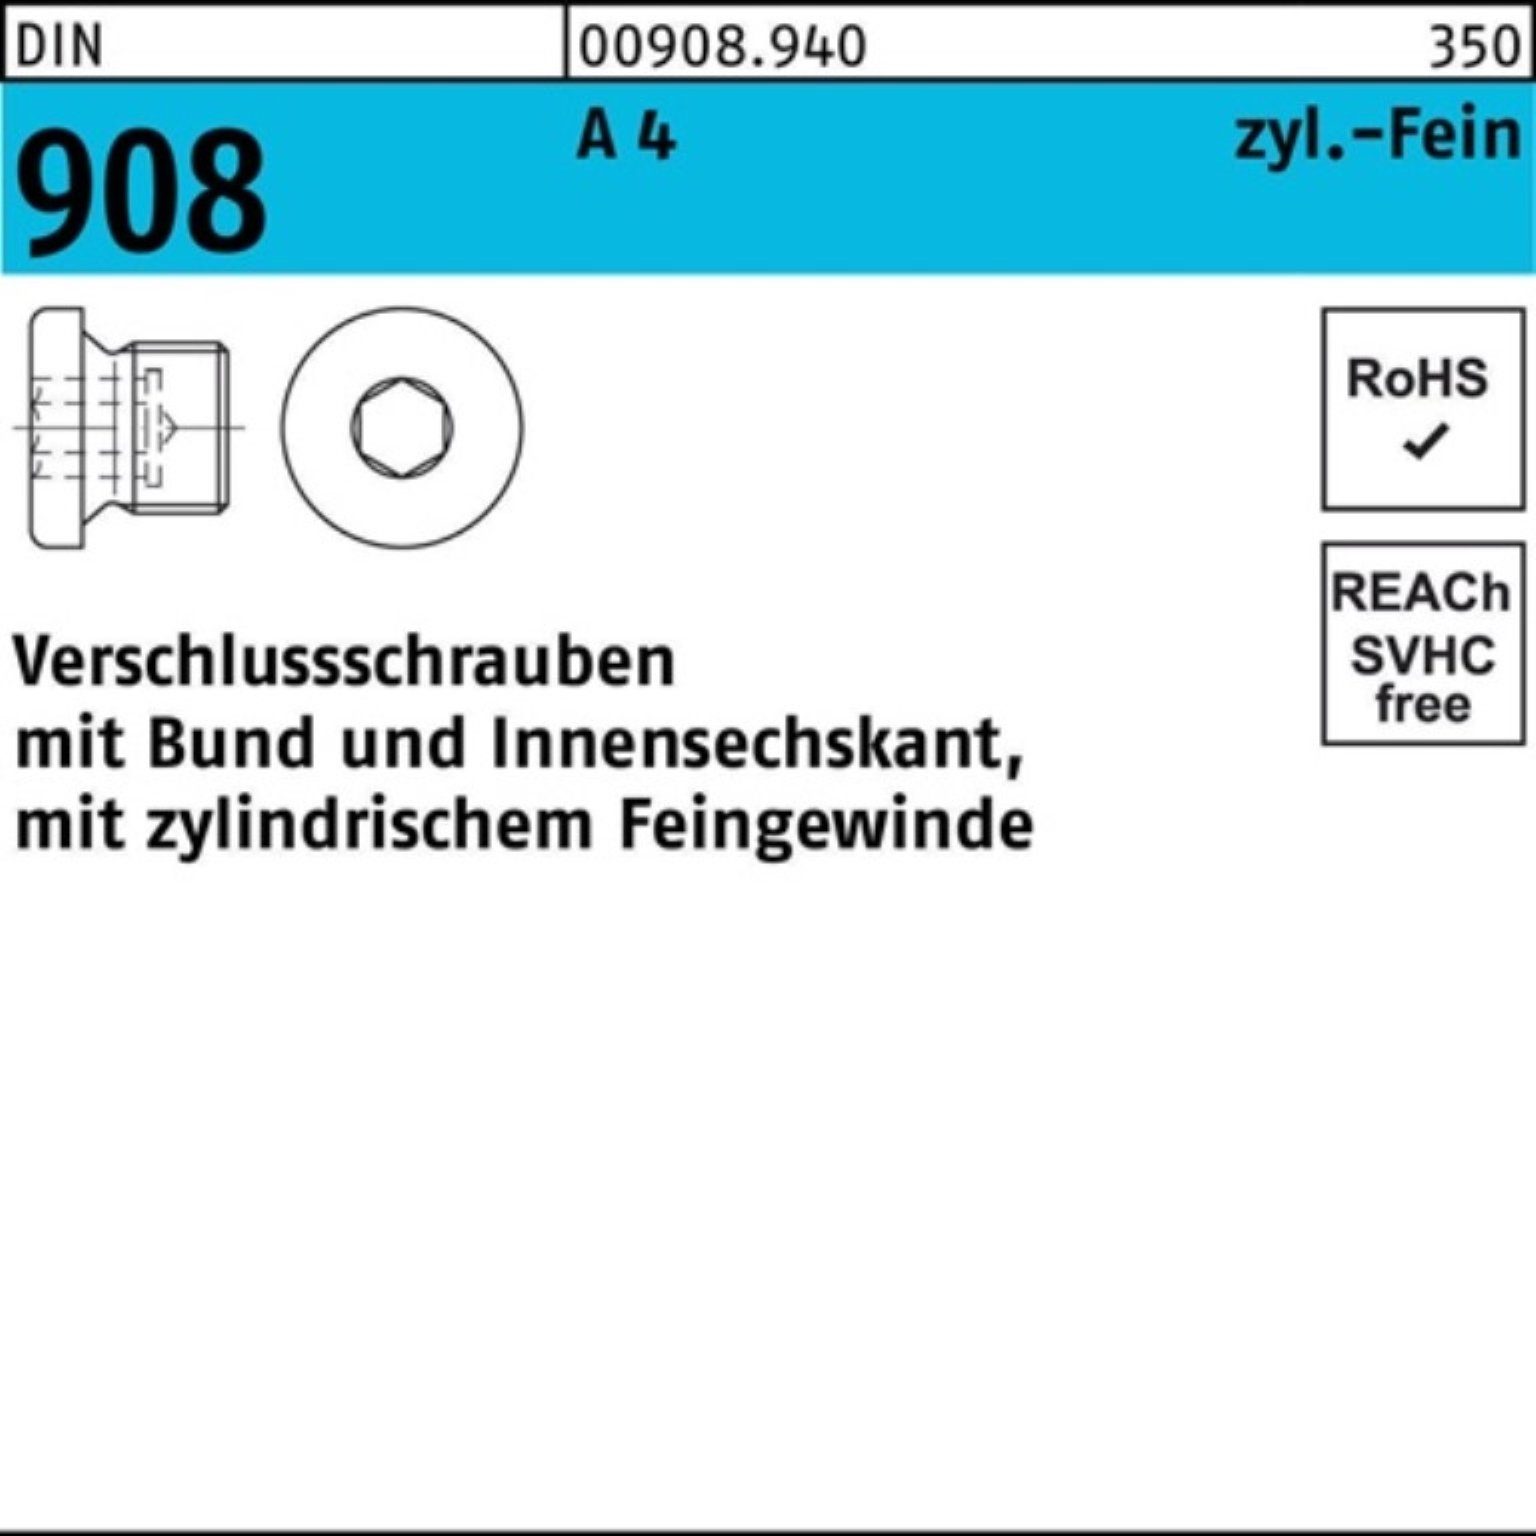 Reyher Schraube 100er Pack Verschlußschraube DIN 908 Bund/Innen-6kt M12x 1,5 A 4 100